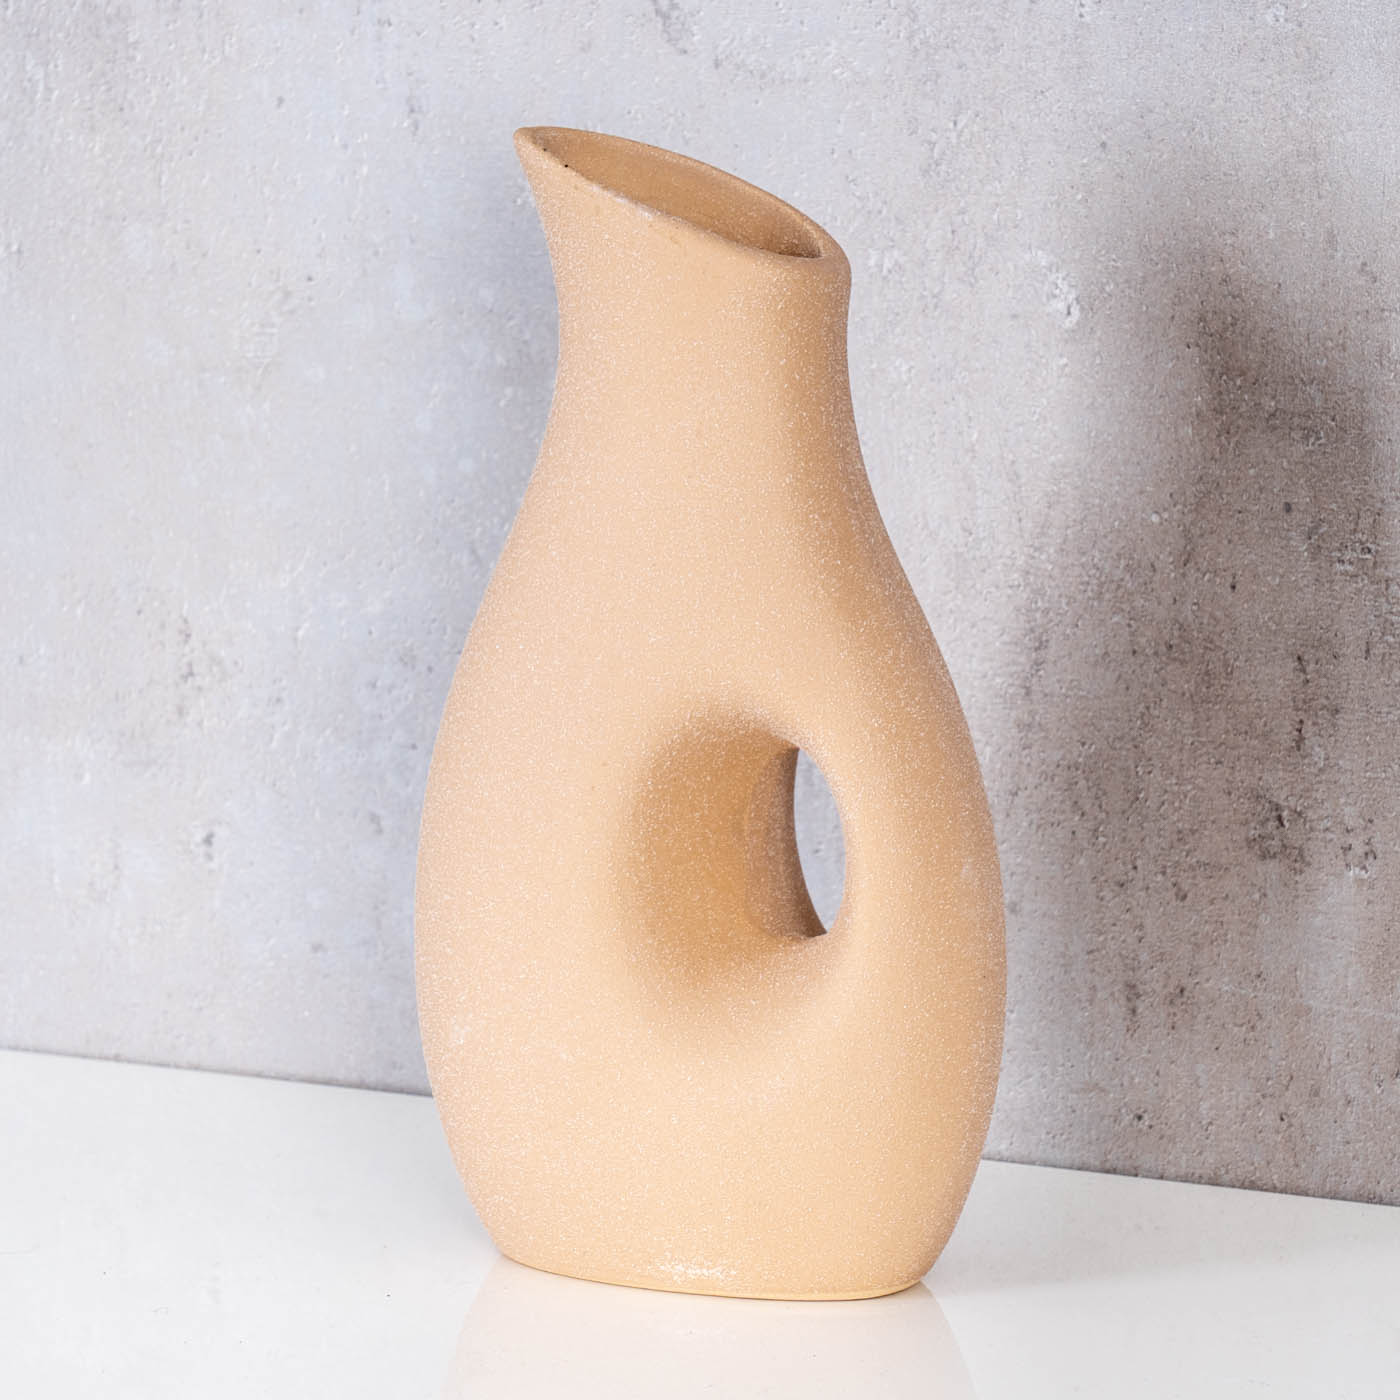 Vase H22cm Blumenvase Keramik Sand Beige Tischdeko Dekovase Keramikvase Deko